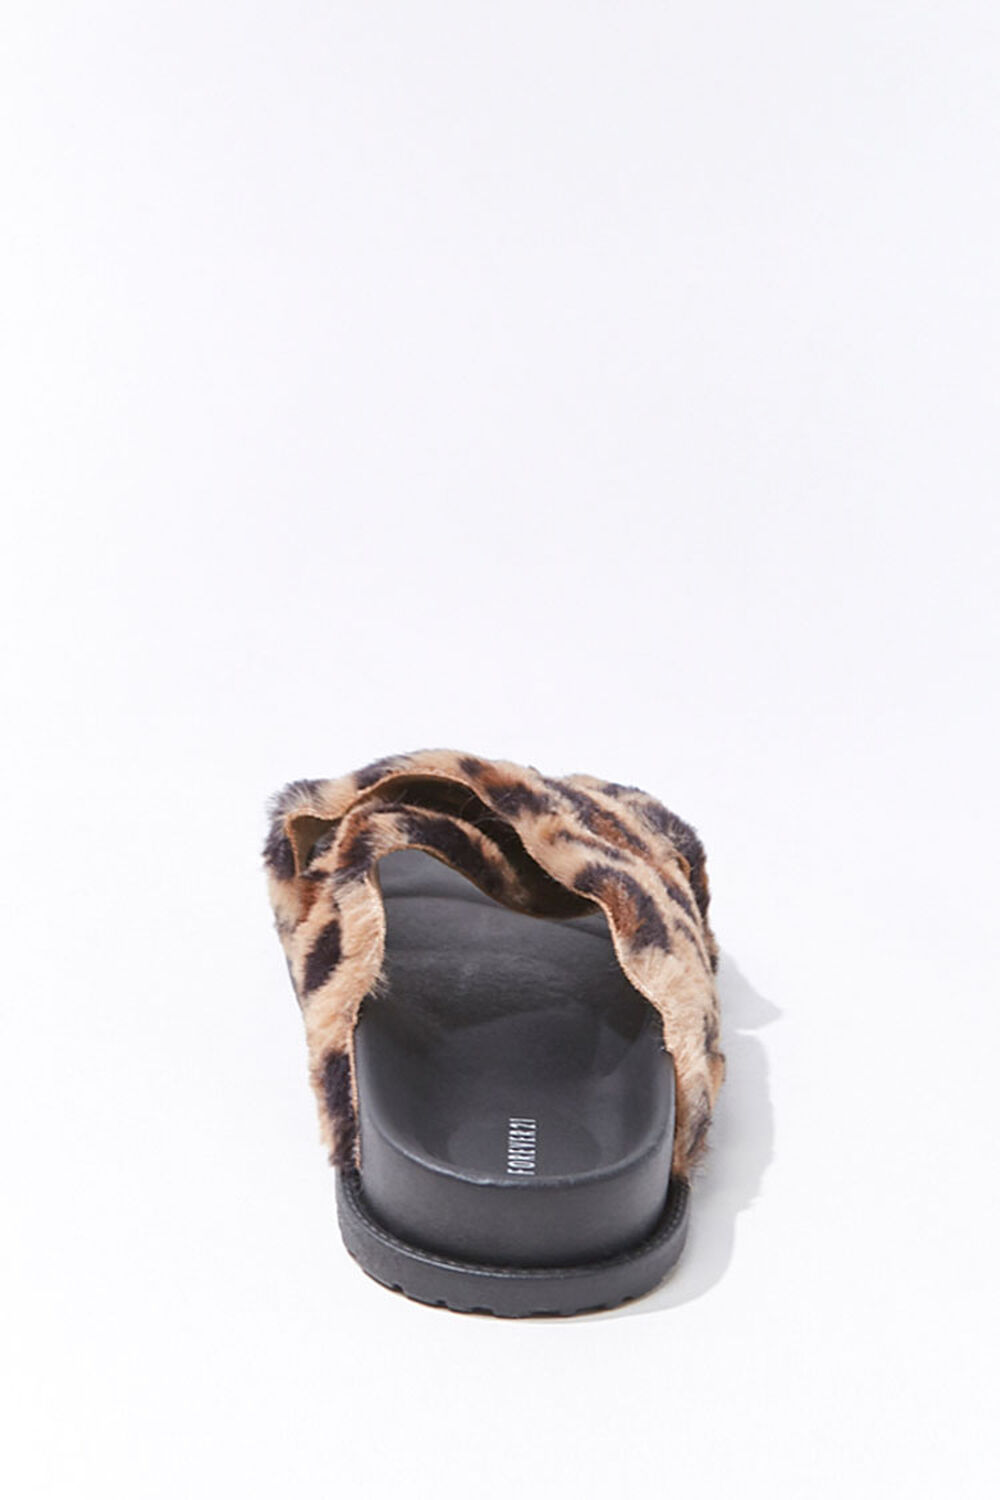 TAN/MULTI Plush Leopard Print Crisscross Slippers, image 2